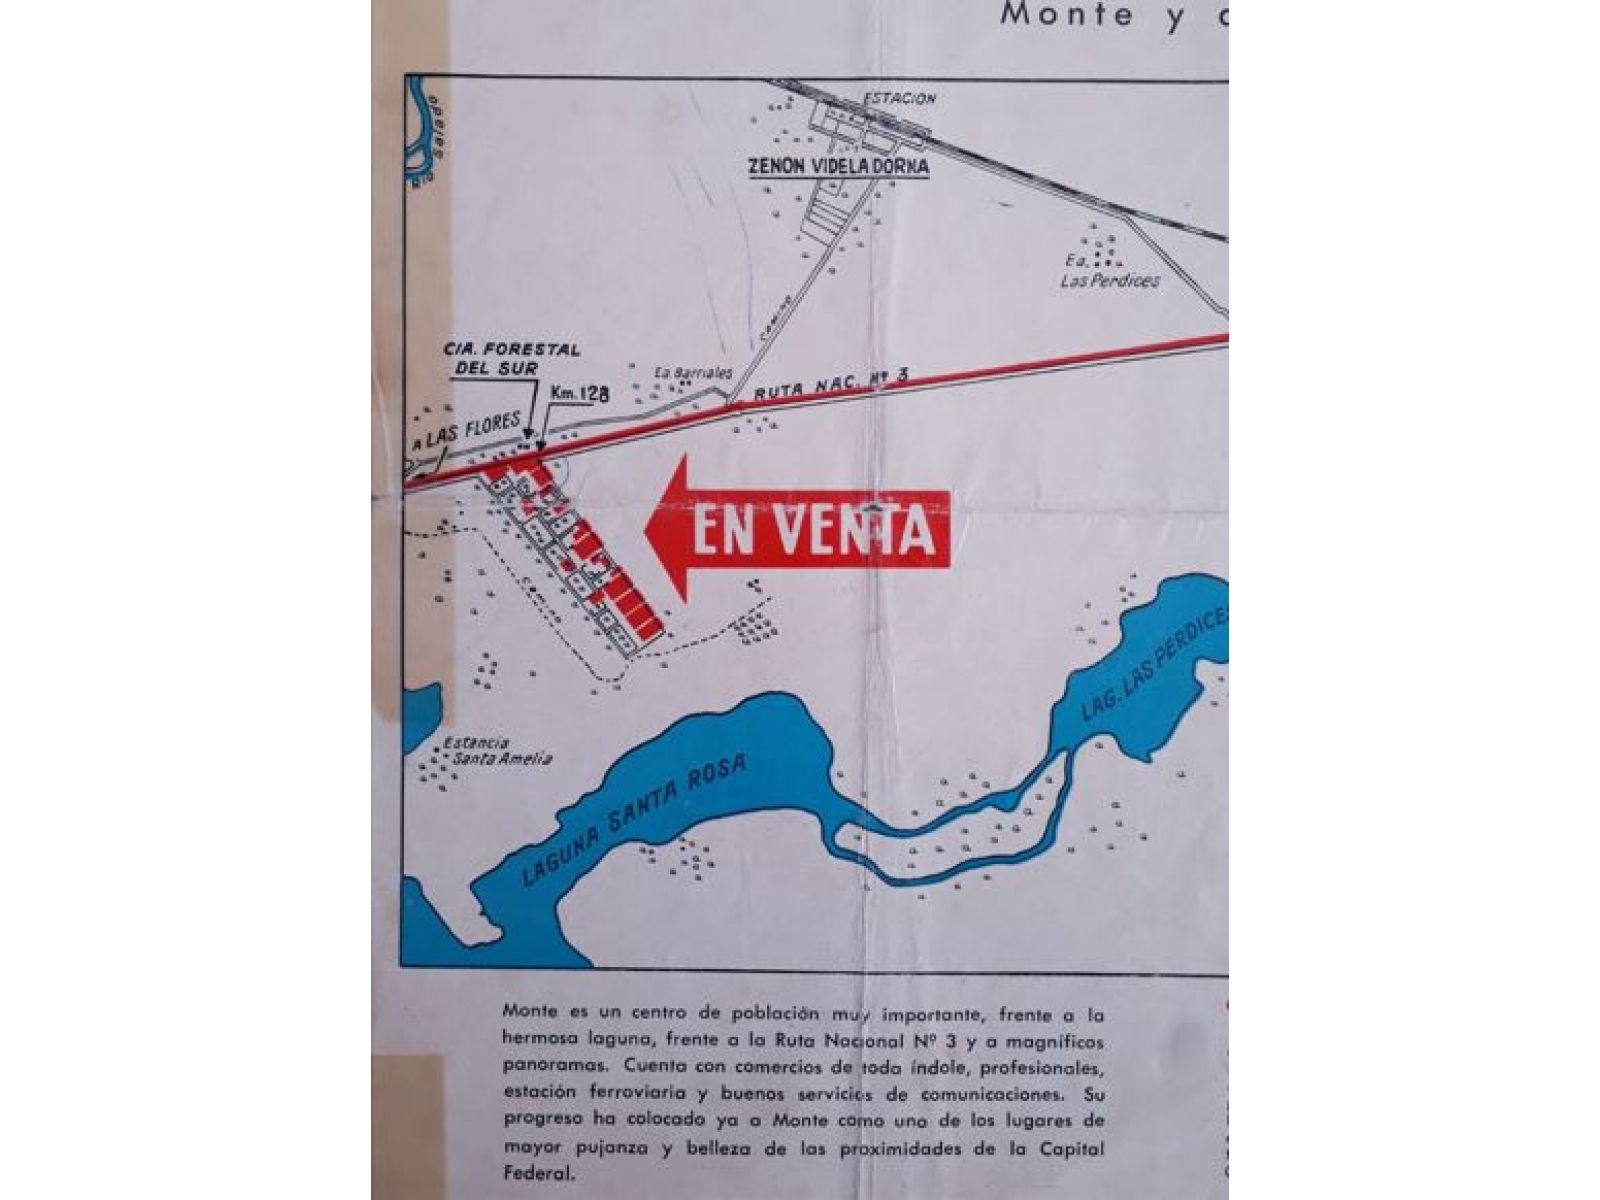 OPORTUNIDAD sobre ruta 3 (nueva autovía). Videla Dorna, a 15km de San Miguel del Monte. Lote terreno venta.